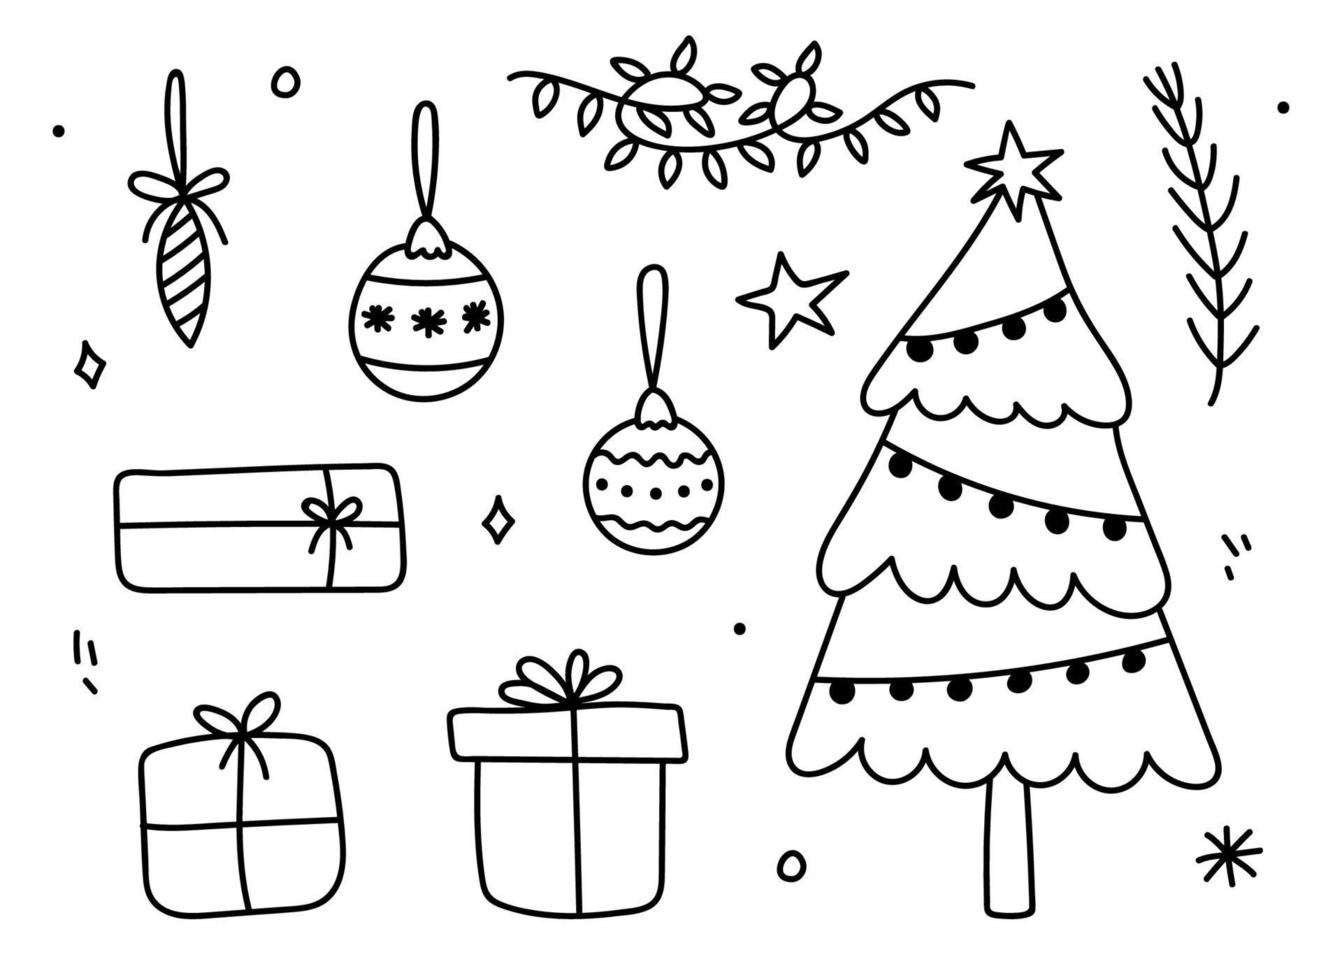 conjunto de garabatos de invierno: un árbol de Navidad decorado, guirnaldas, regalos, adornos navideños y rama de abeto. ilustración de dibujado a mano de dibujos animados de vector. perfecto para diseños navideños, tarjetas, invitaciones. vector